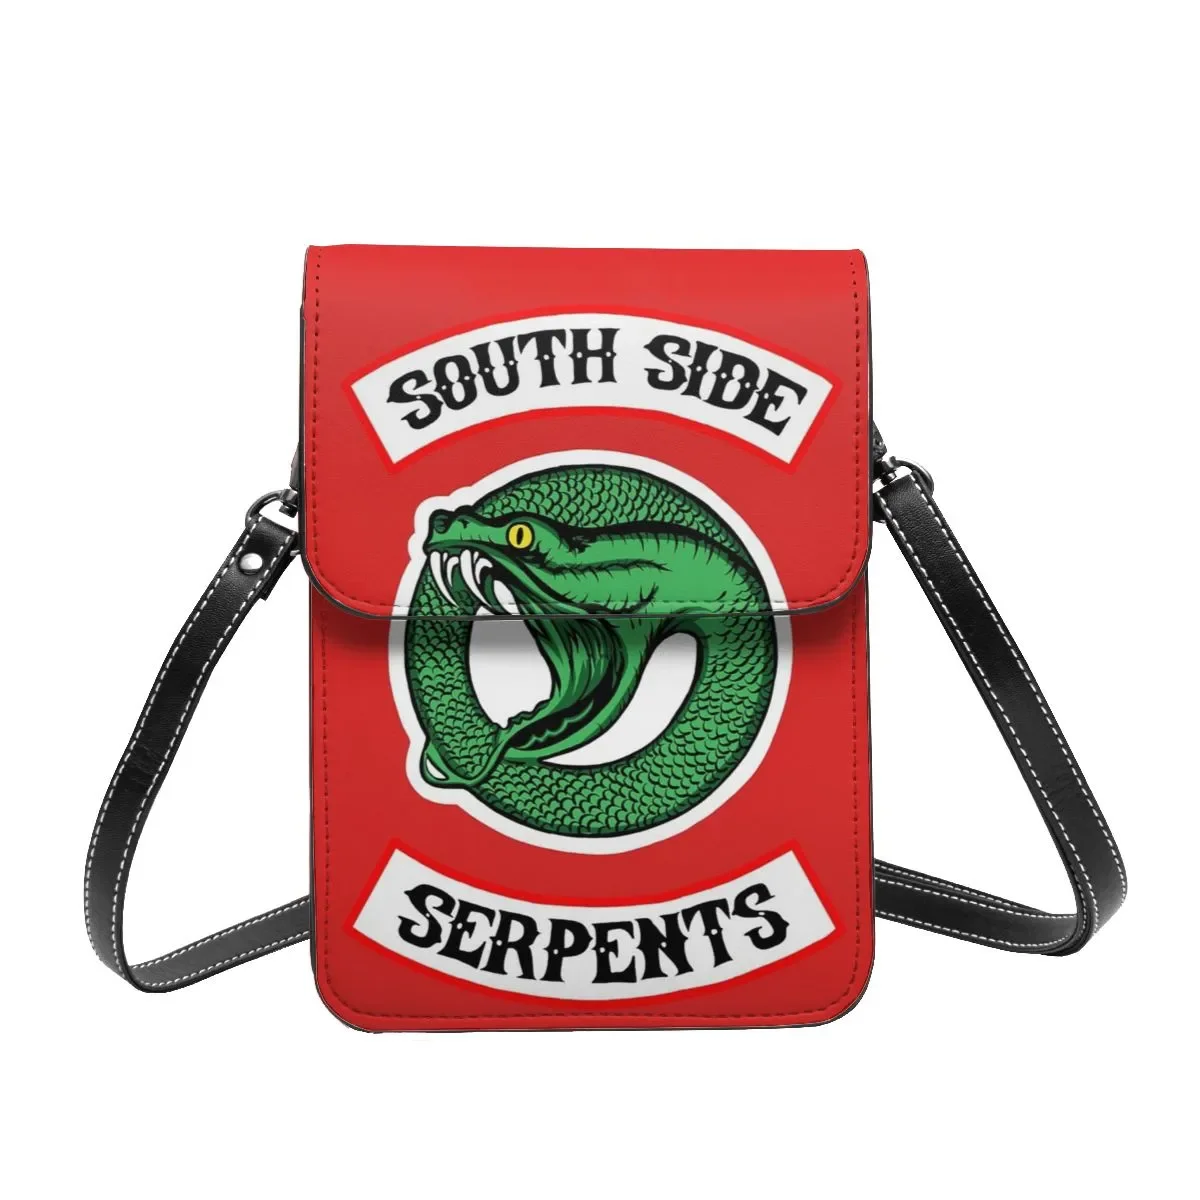 

Наплечная Сумка Riverdale South Side Serpent, Женская деловая сумка для ТВ-сериала, модные стильные кожаные сумки